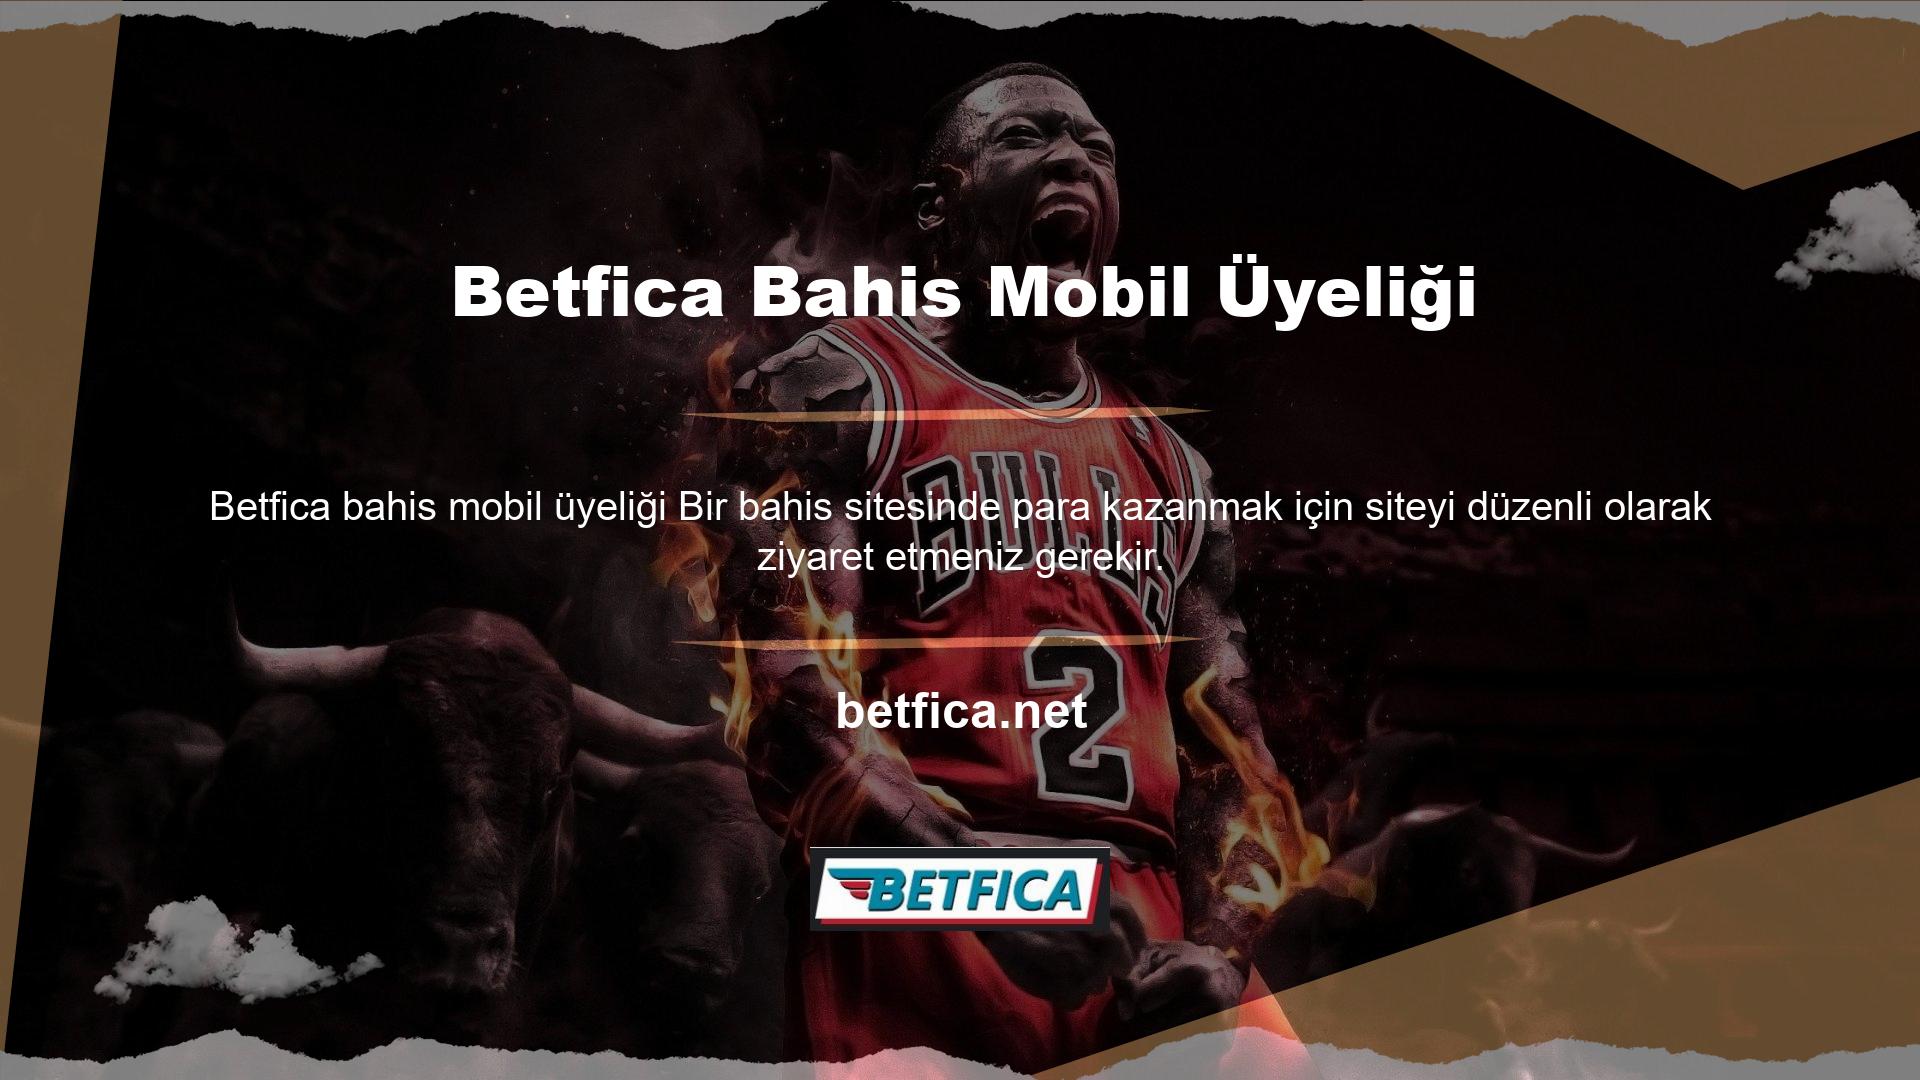 Yani birçok bahis sitesi gibi Betfica de mobil bağlantıya sahiptir